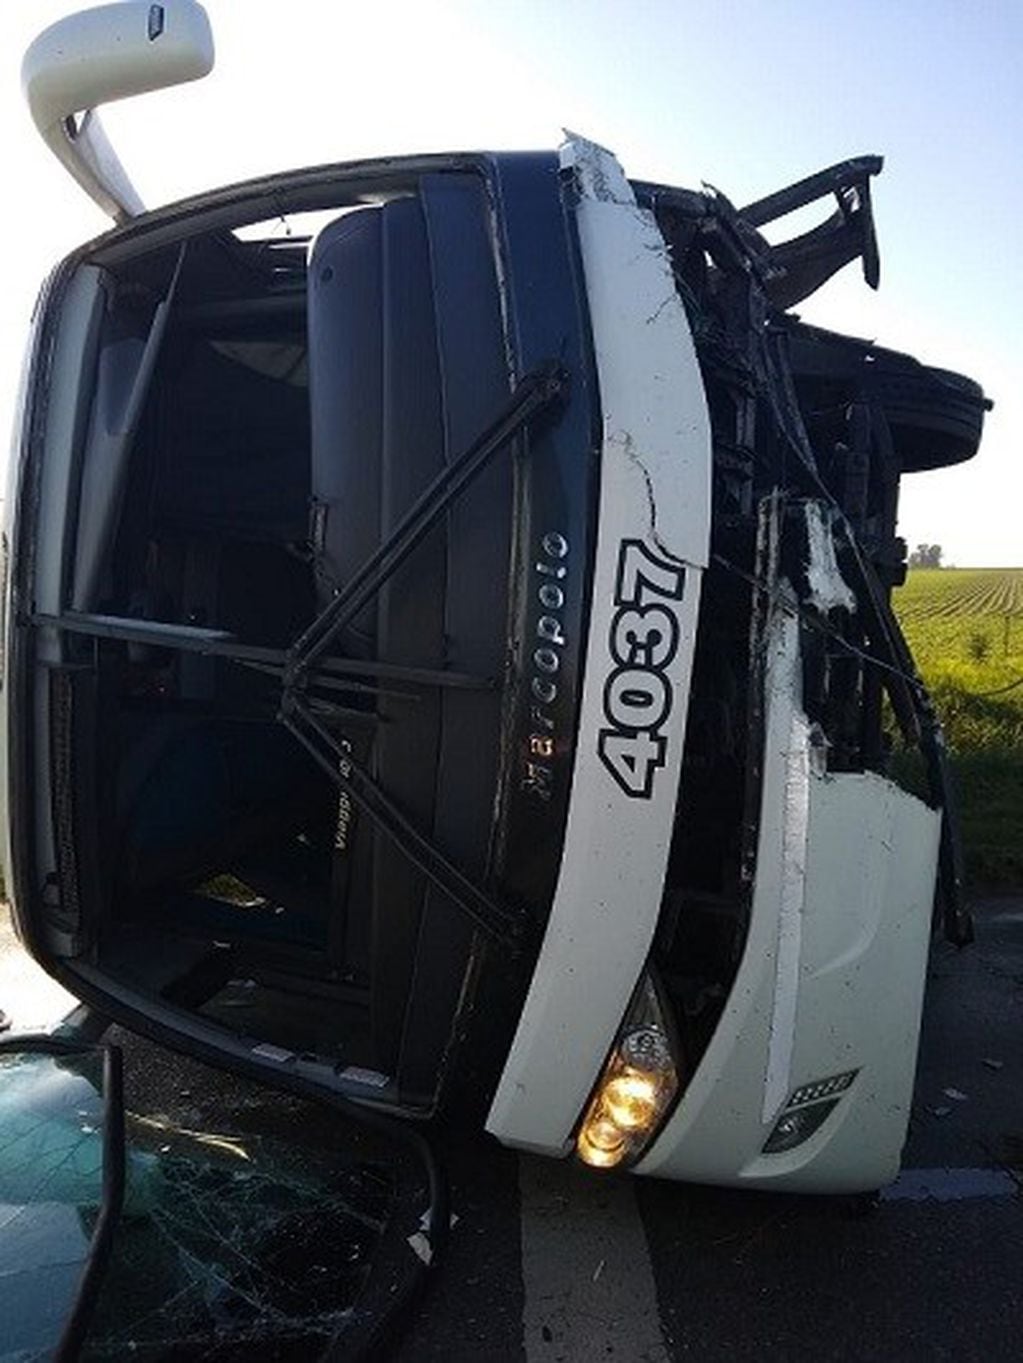 El accidente ocurrió este domingo por la mañana en la ruta 33. (@Luciano434)